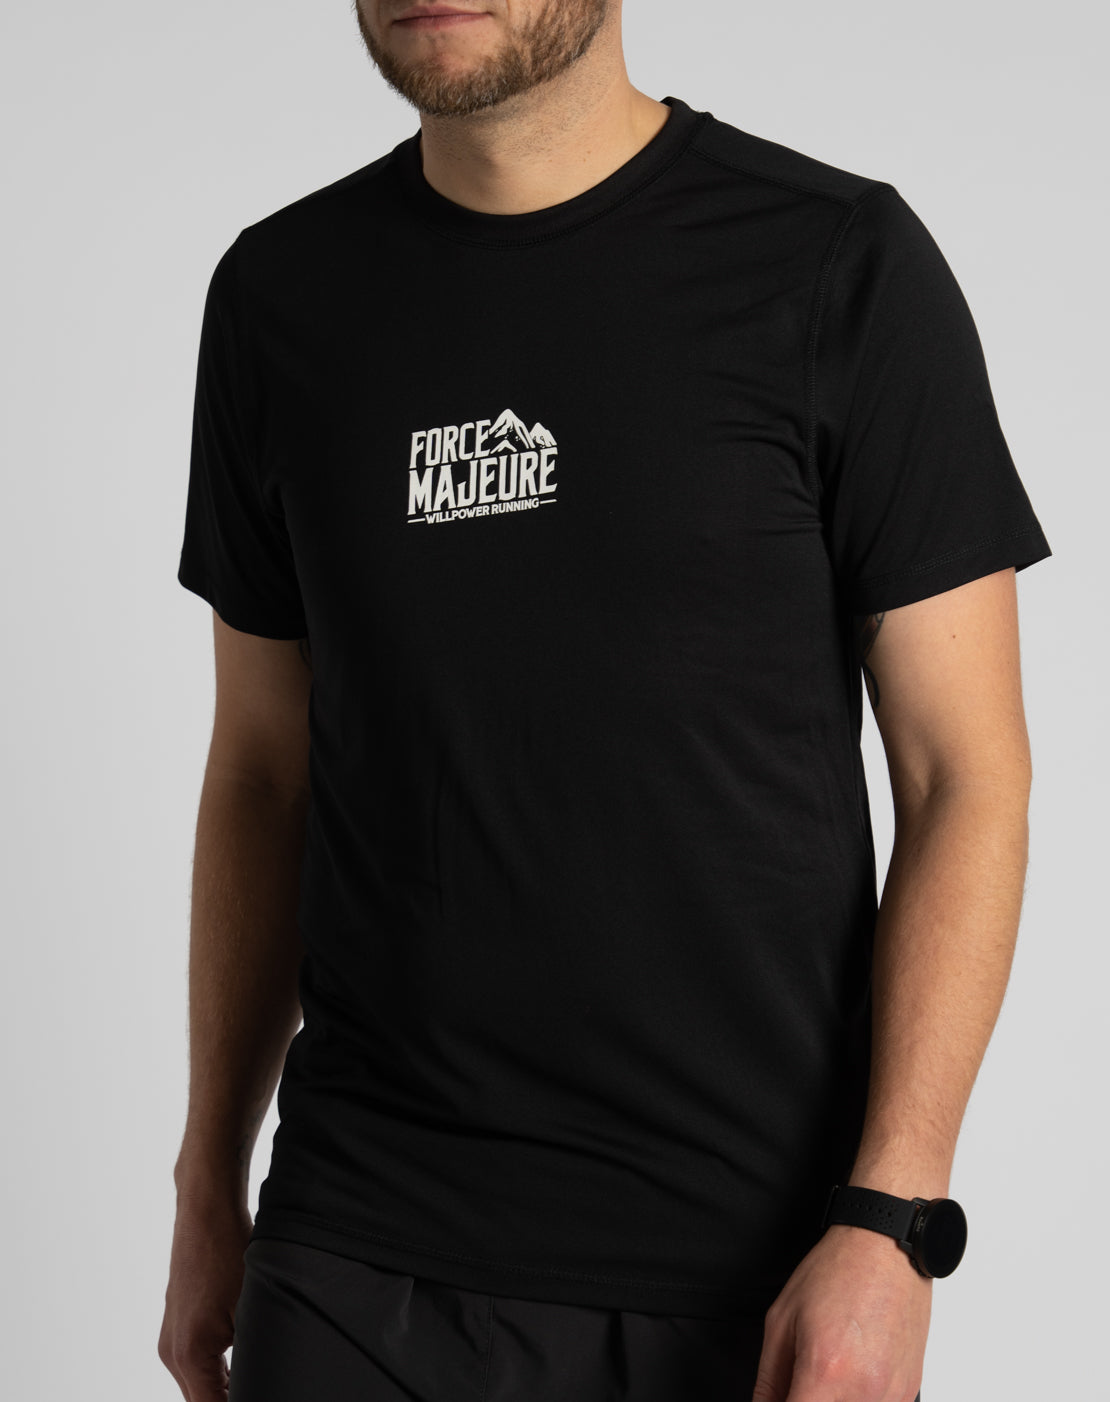 "Force Majeure" Racing T-Shirt